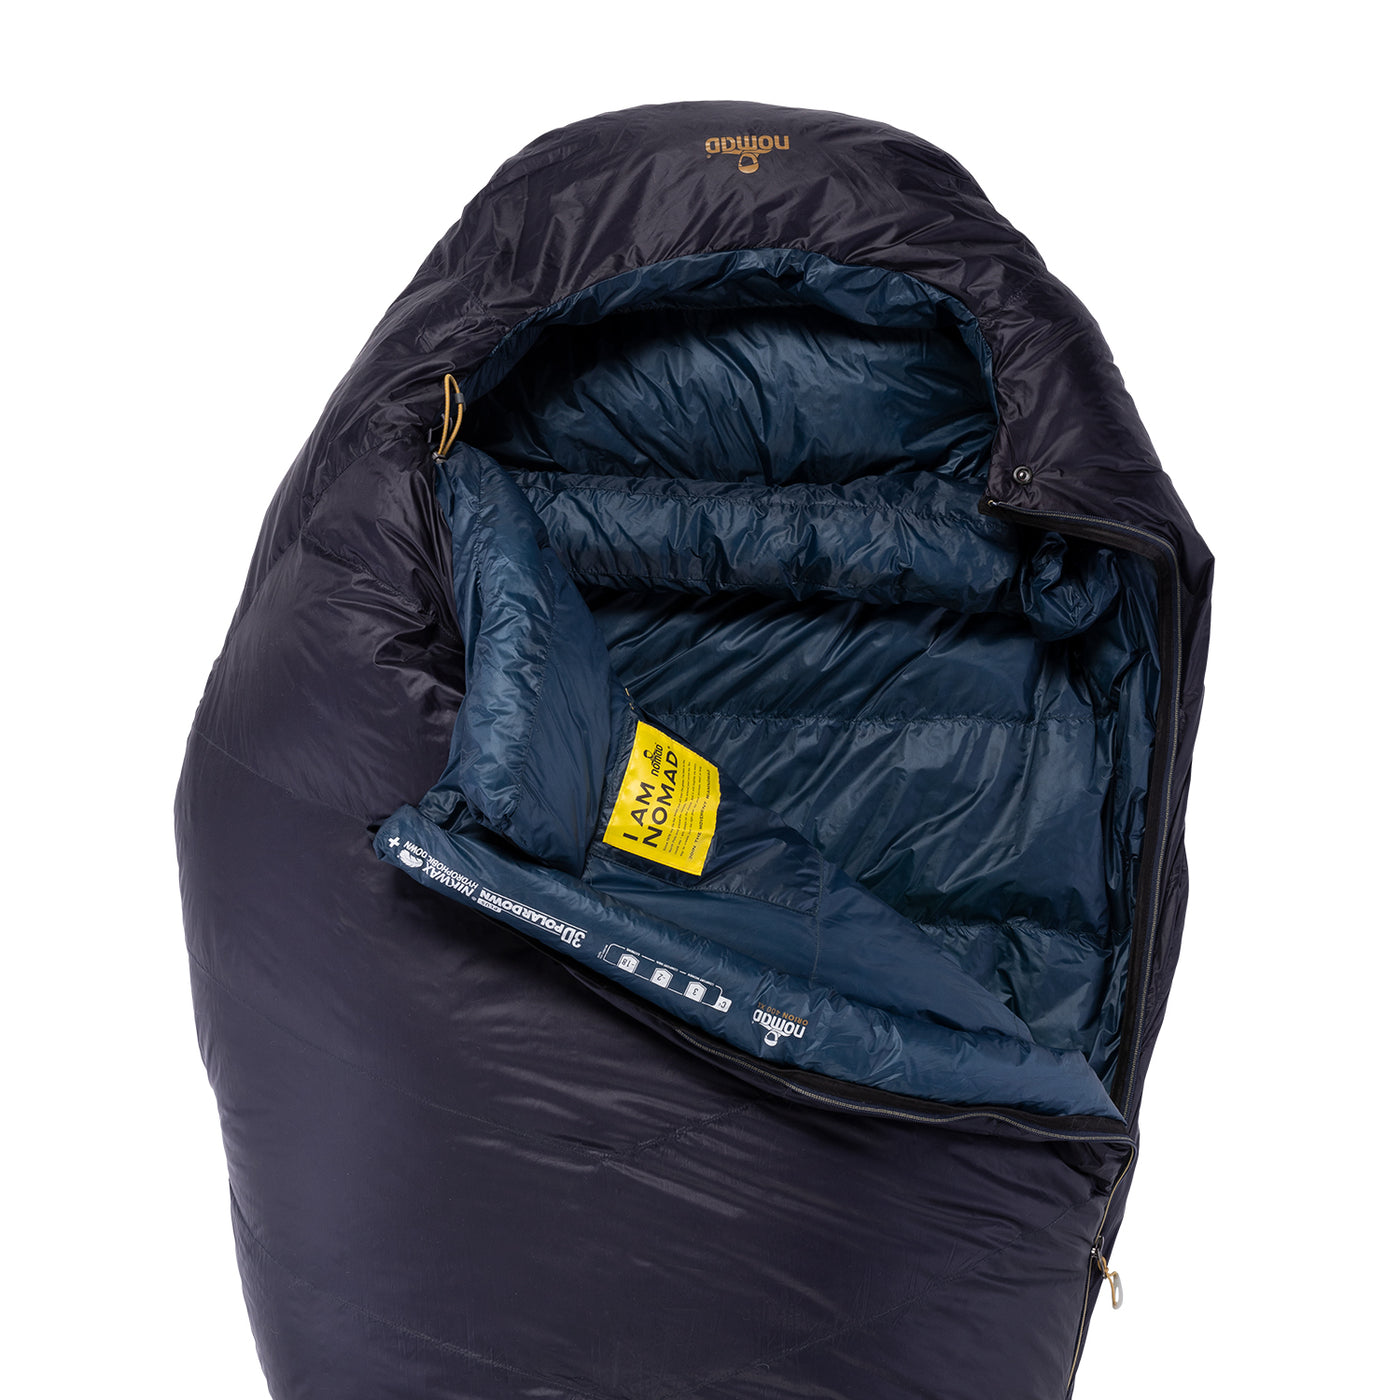 Orion 400 XL Mummy Sleeping Bag